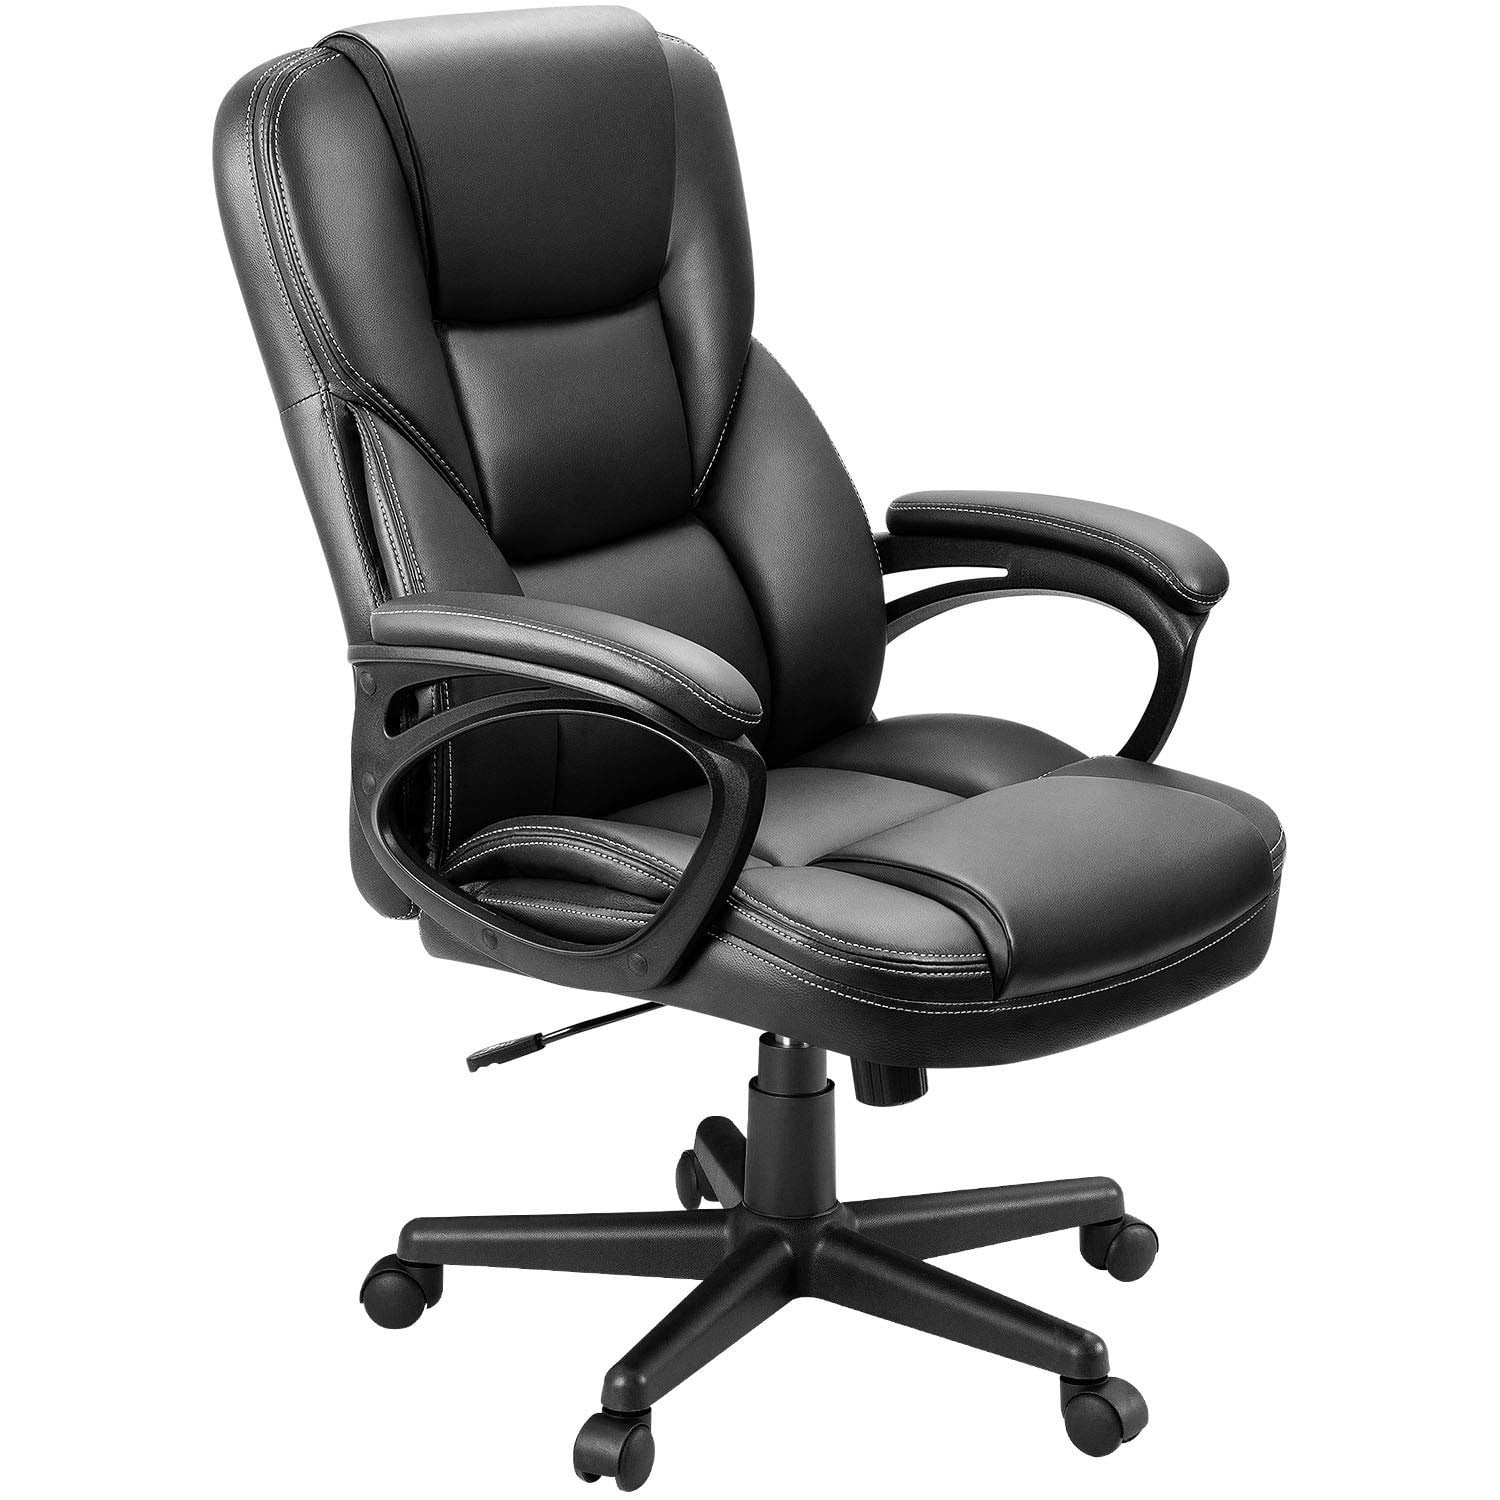 があります High Thick Bonded Leather Office Chair for Comfort and ...